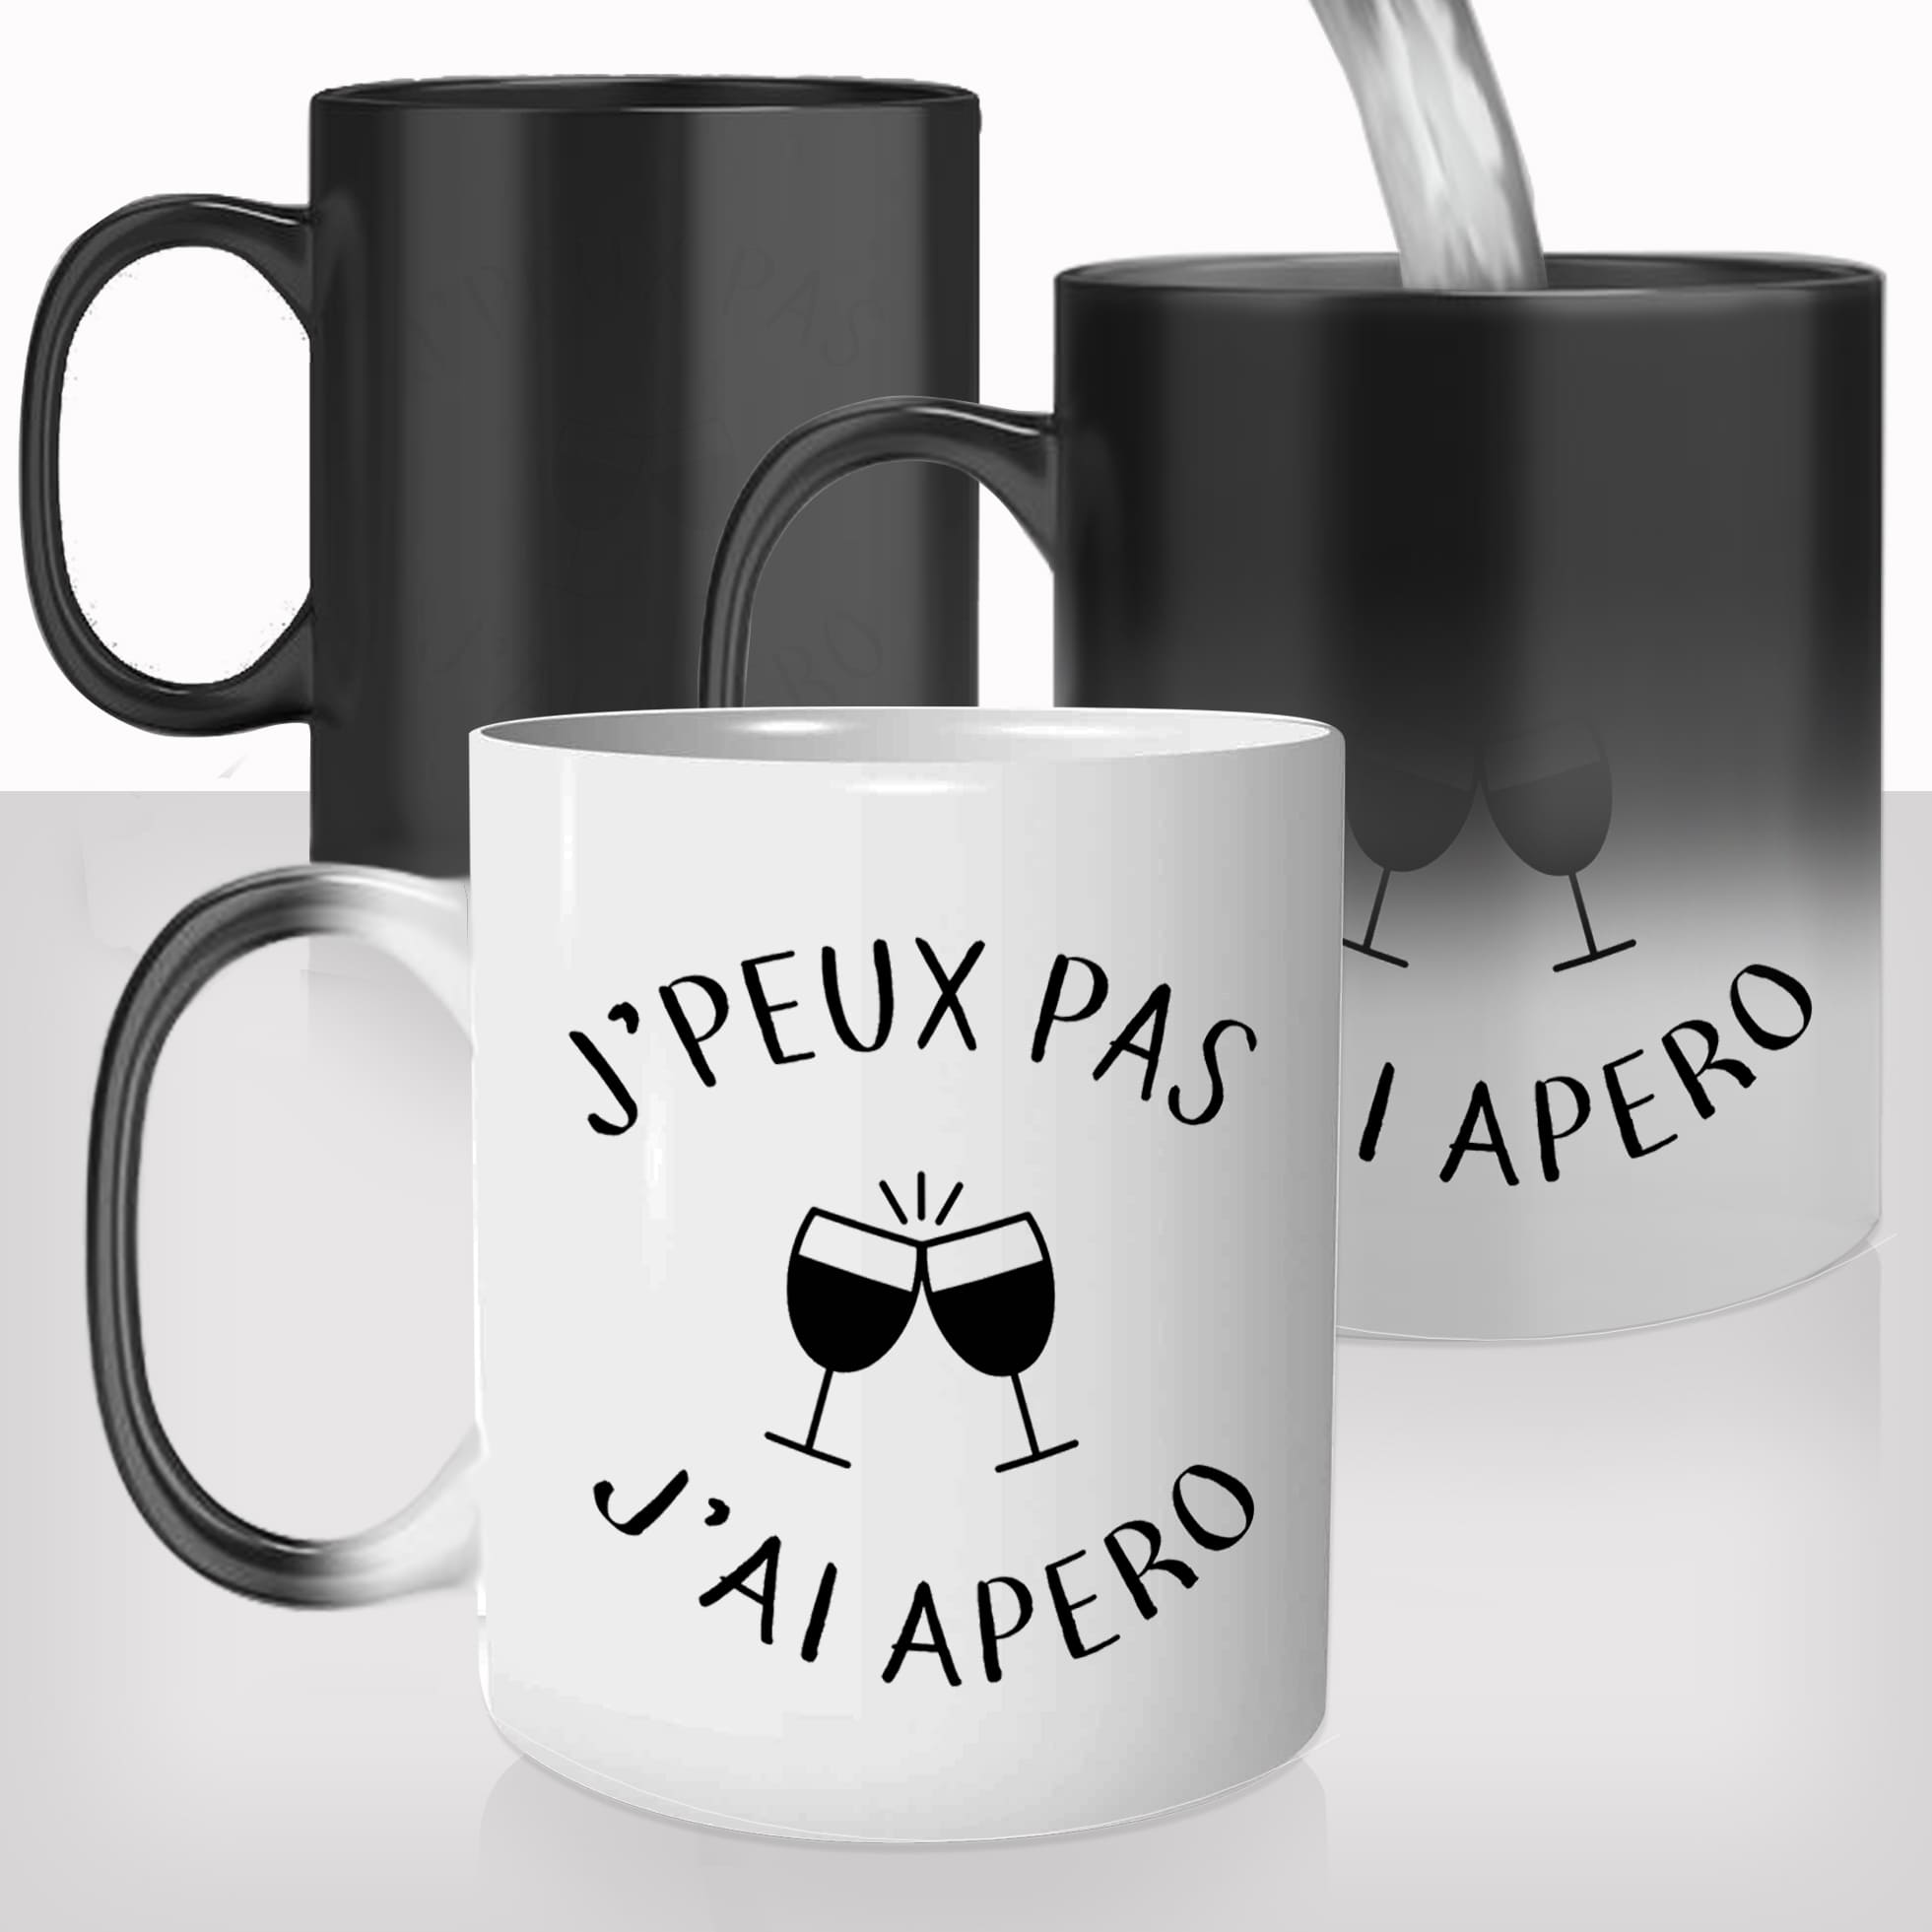 mug-magique-tasse-magic-thermo-reactif-jpeux-pas-jai-apéro-aperitif-copines-rosé-drole-photo-personnalisable-offrir-cadeau-original-fun